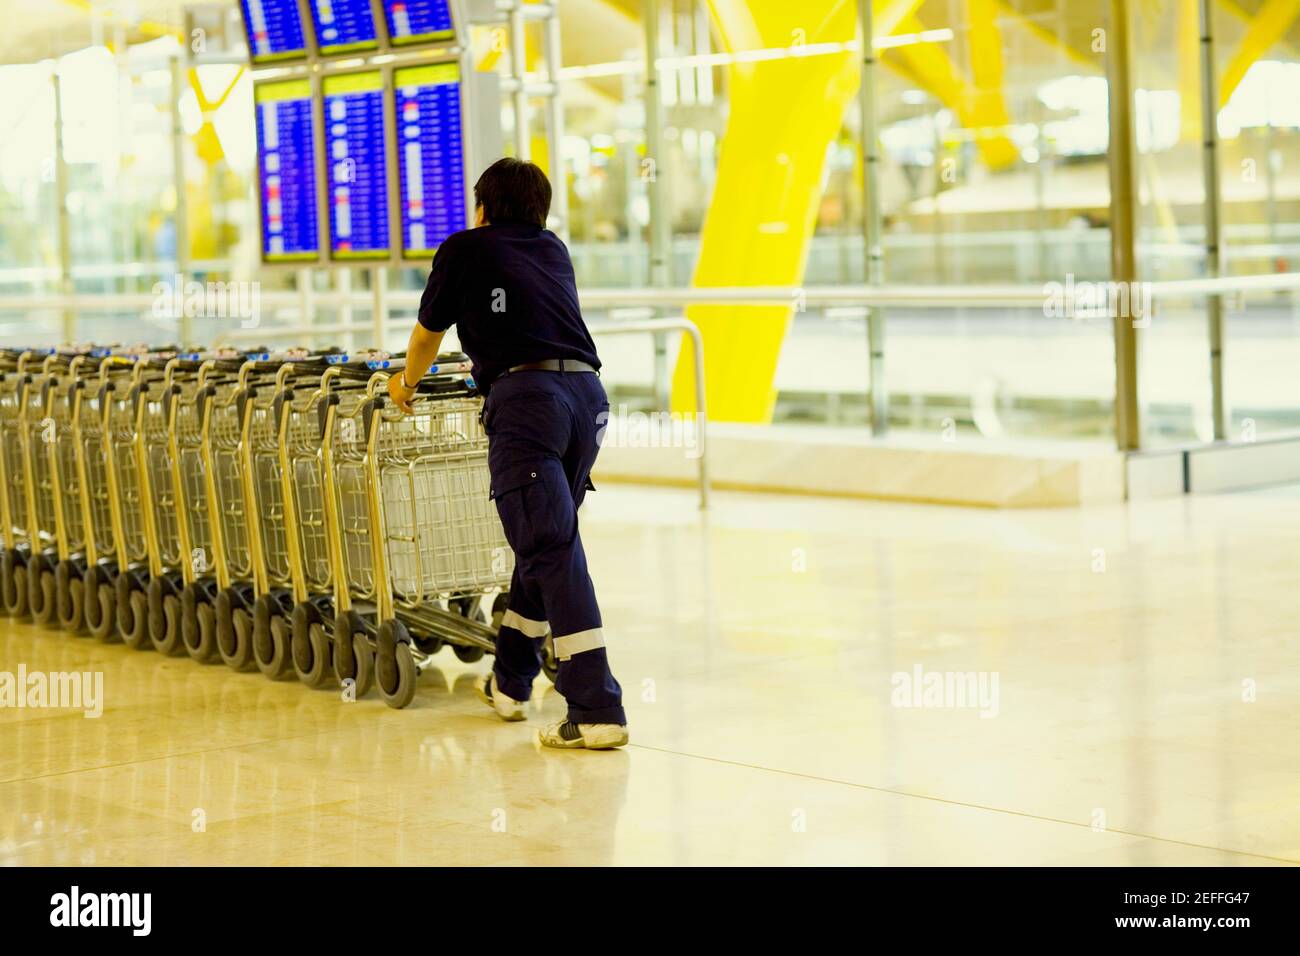 Vista posteriore di una persona che spinge i carrelli bagagli in fila, Madrid, Spagna Foto Stock